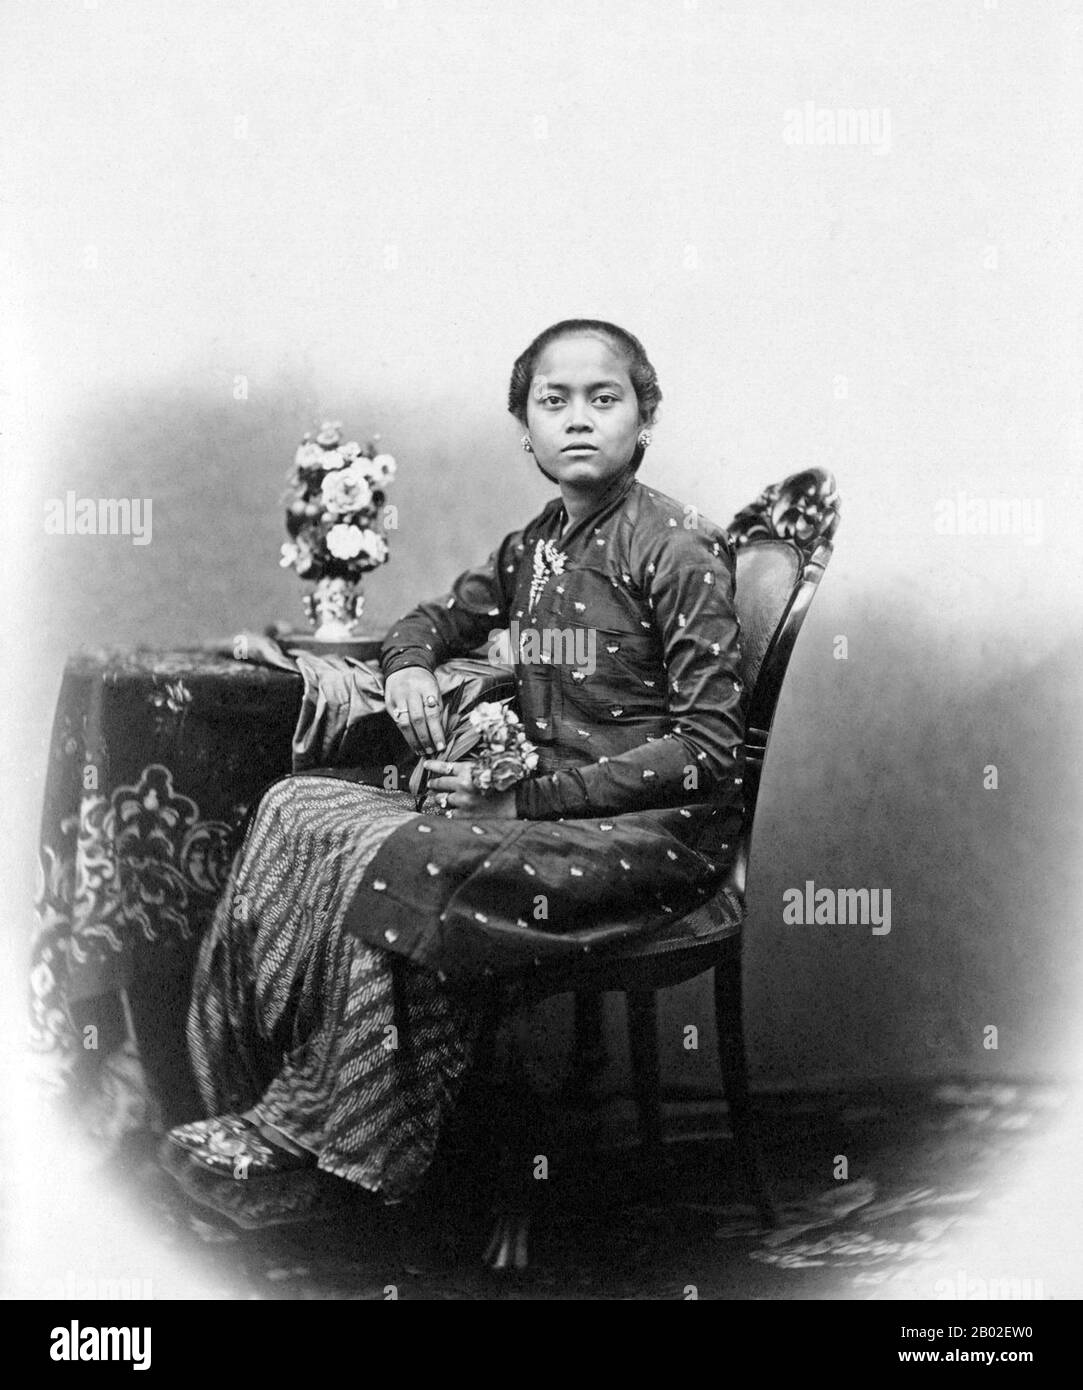 Kassian Cephas (15. Januar 229 - 16. November 1912) war ein javanischer Fotograf am Hof des Sultanats Yogyakarta. Er war der erste indigene Mensch aus Indonesien, der professioneller Fotograf wurde und wurde auf Wunsch von Sultan Hamengkubuwana VI. (R. Von 185-1877). Nachdem er Anfang 1871 Hoffotograf geworden war, begann er mit der Porträtfotografie für Mitglieder der königlichen Familie sowie mit dokumentarischen Arbeiten für die Archäologische Union Niederländisches (Archaeologische Vereeniging). Cephas wurde für seine Beiträge zur Bewahrung des kulturellen Erbes von Java durch Memb anerkannt Stockfoto